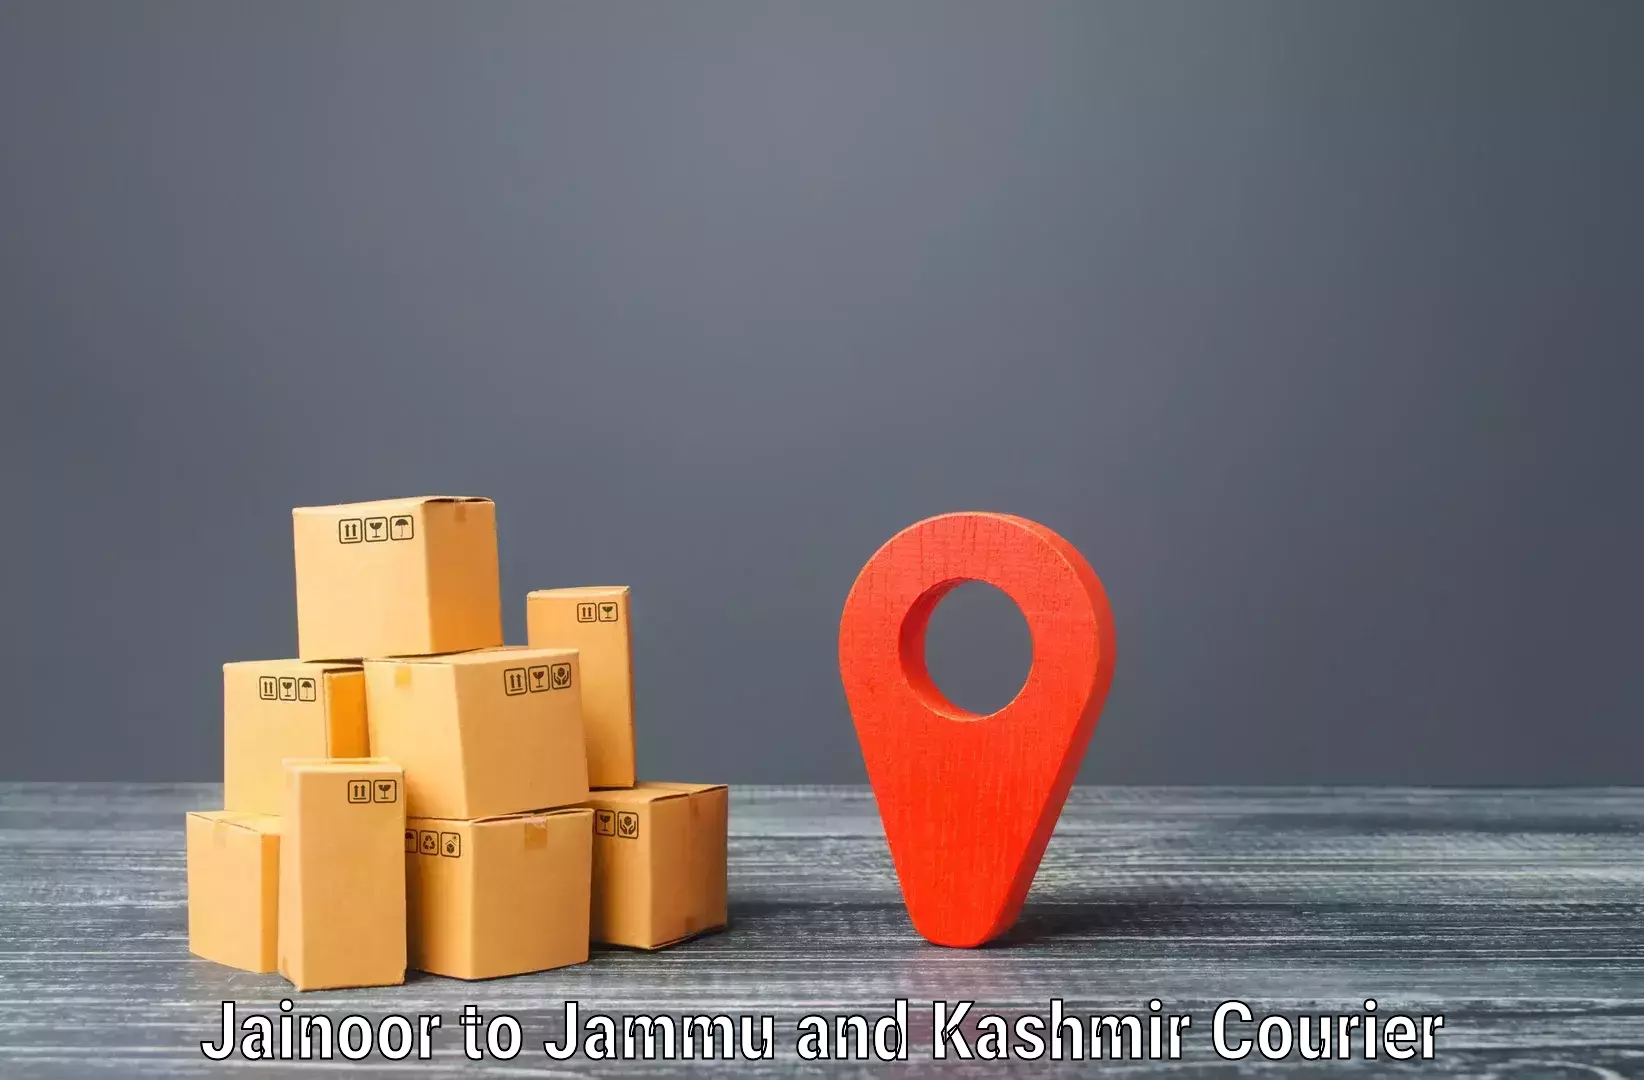 Same-day delivery options Jainoor to IIT Jammu